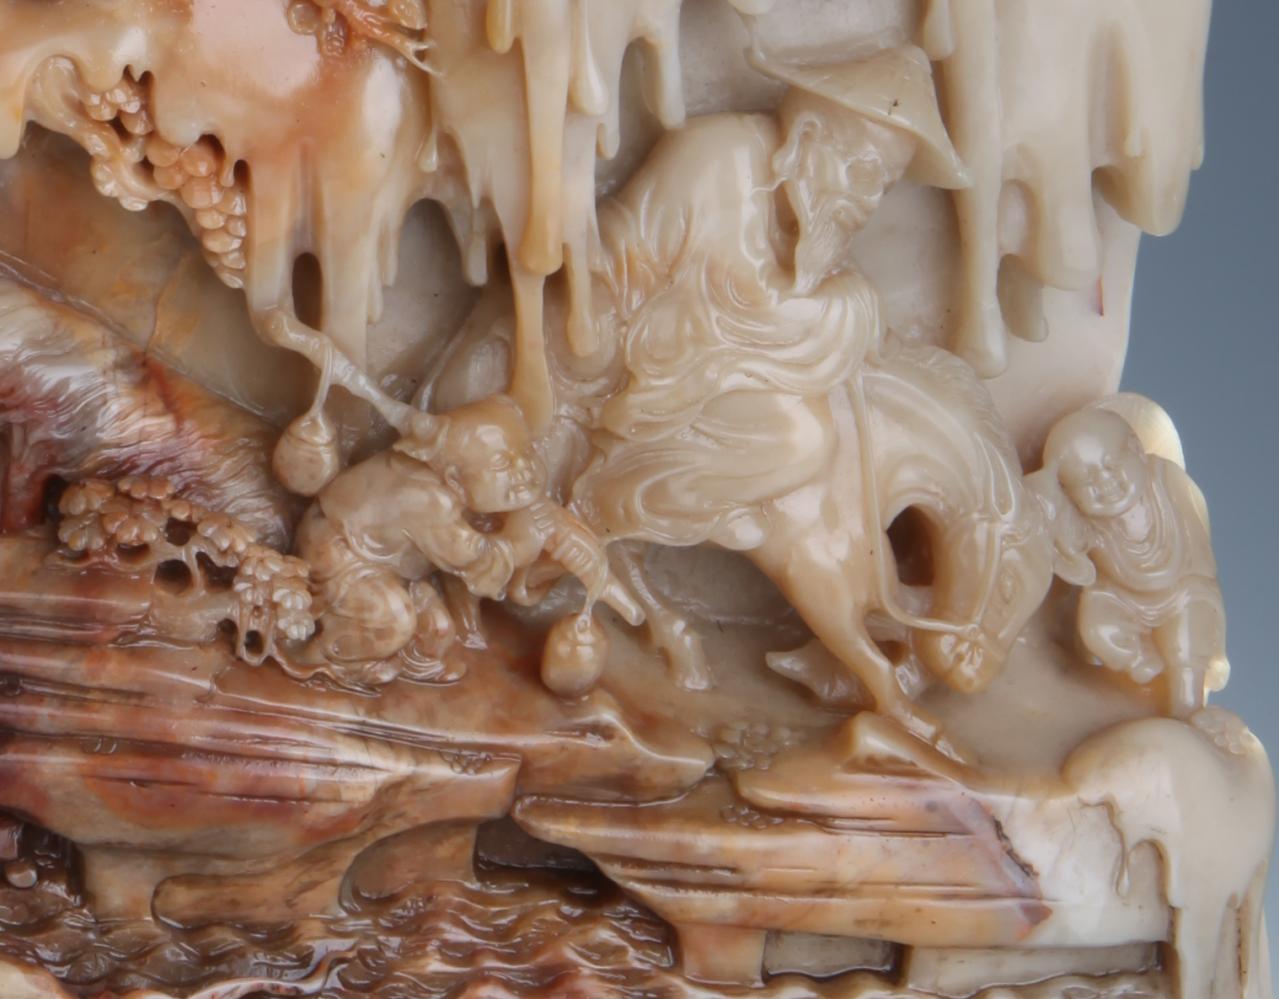 《踏雪寻梅》局部展示作品名称《豹》作品简介:昌化豹皮花石质雕刻的